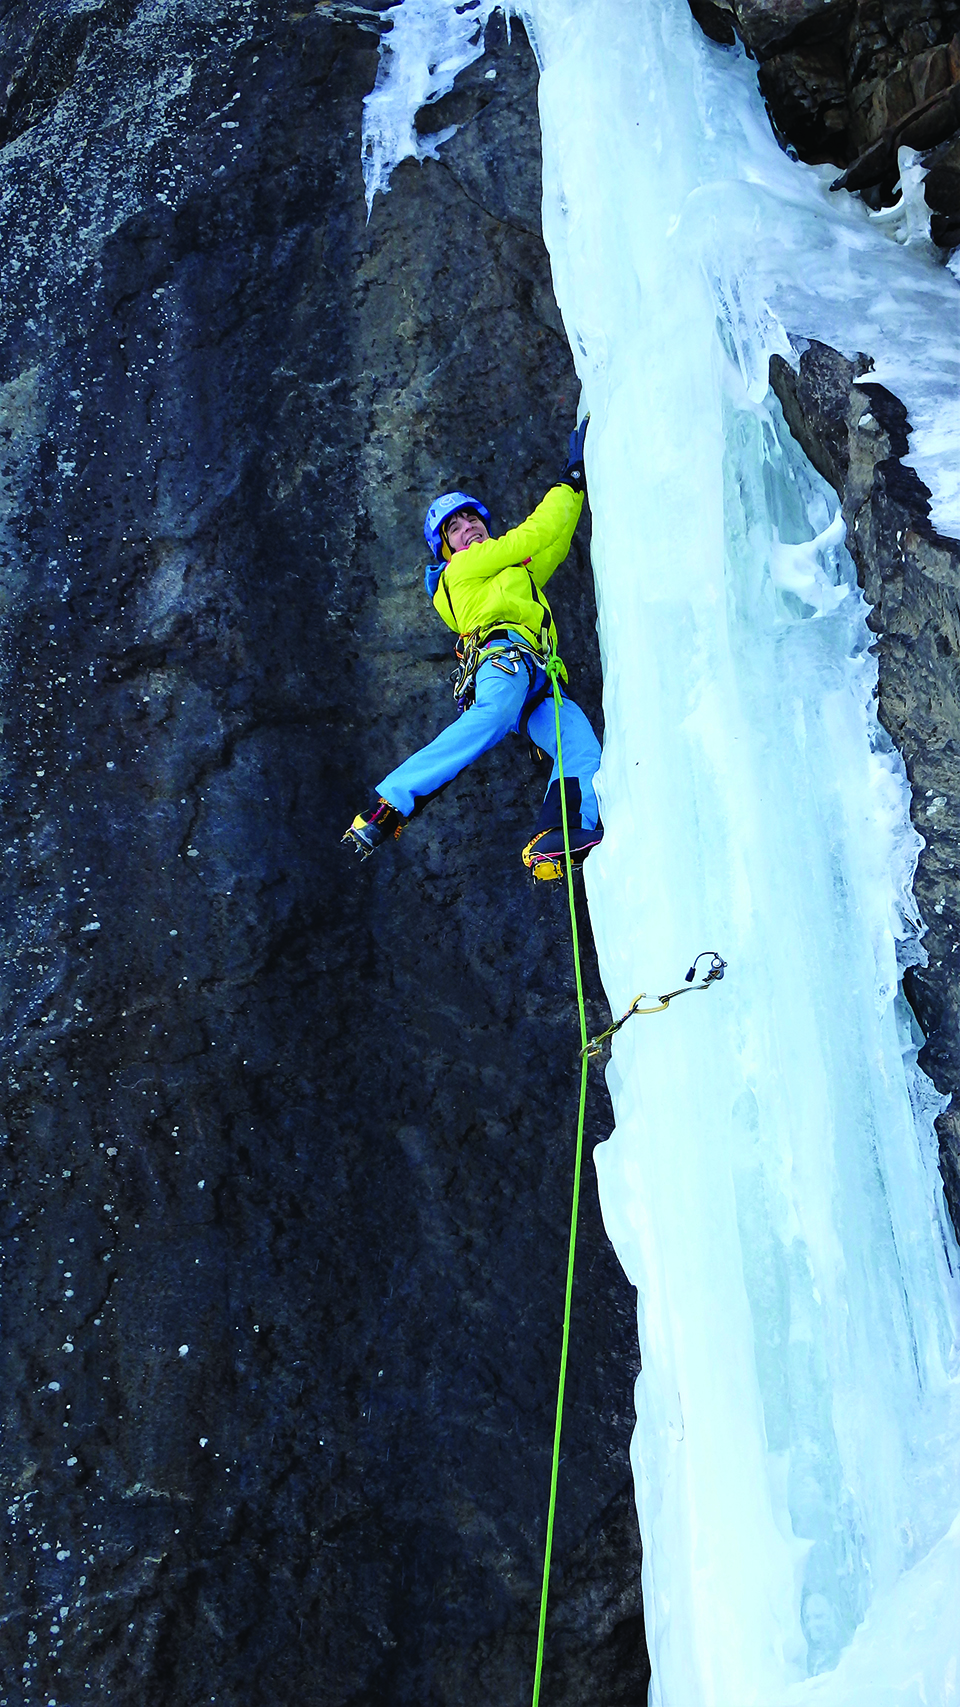 수직 고드름 빙벽에서의 춤사위는 그녀의 안정된 등반을 증명한다.